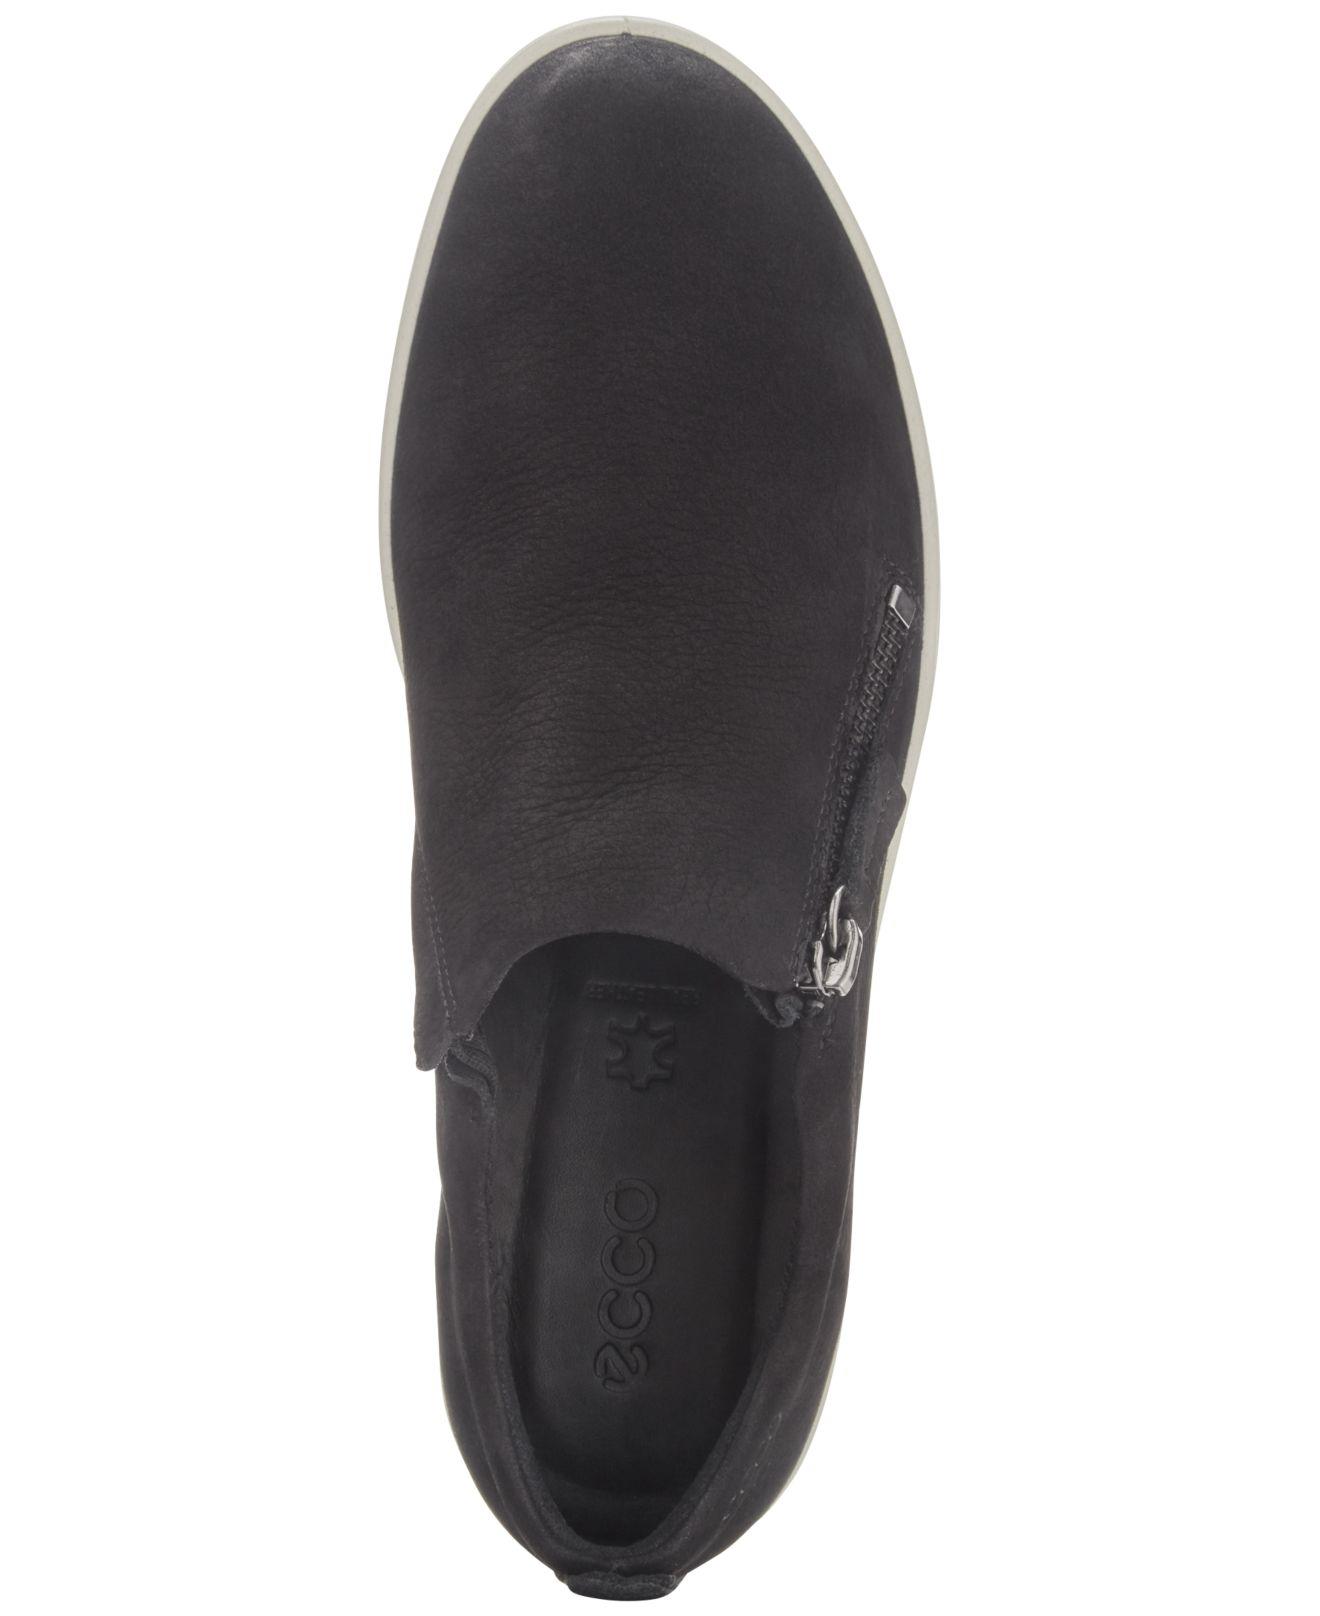 Ecco Leather Women's Fara Zip Slip-on Sneakers in Black - Lyst